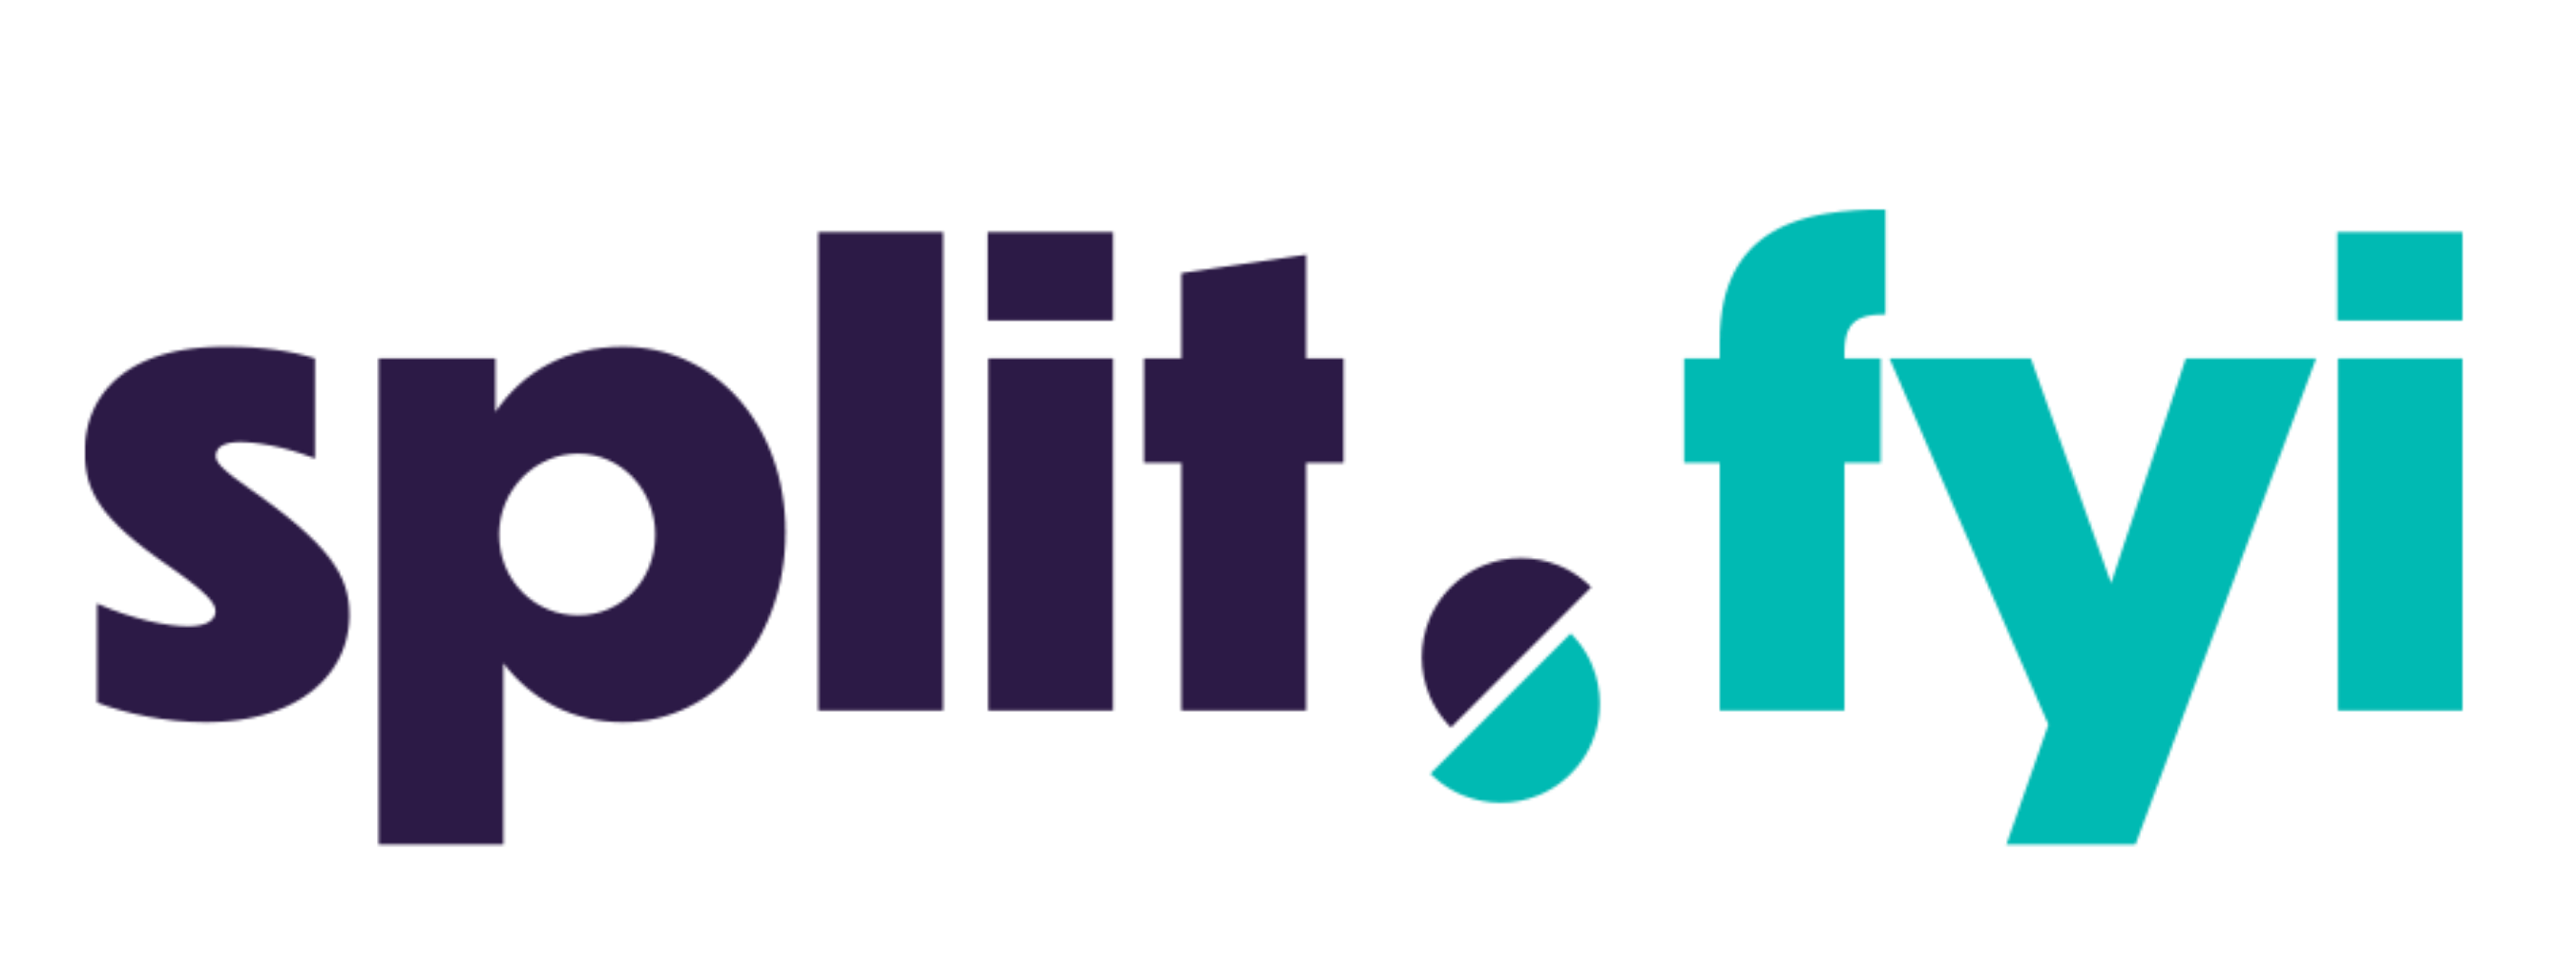 Split.fyi logo